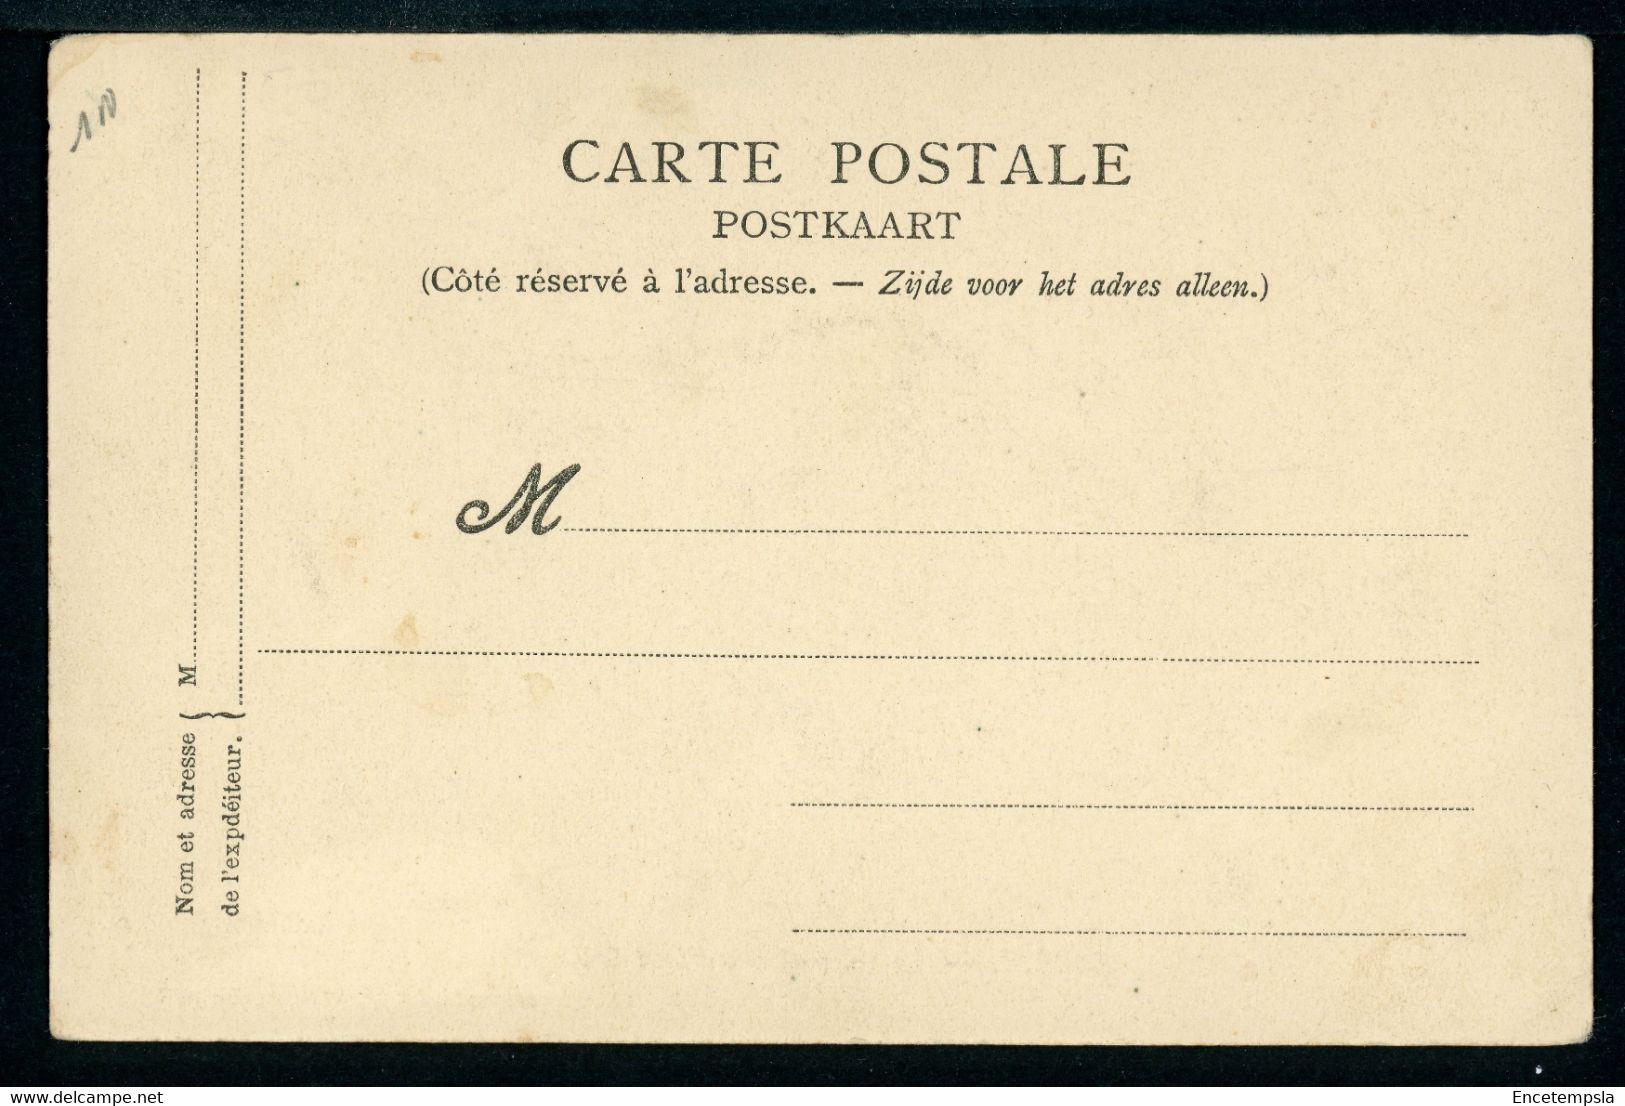 CPA - Carte Postale - Belgique - Hannut - Le Couvent Des Pères Croisiers (CP20514) - Hannut